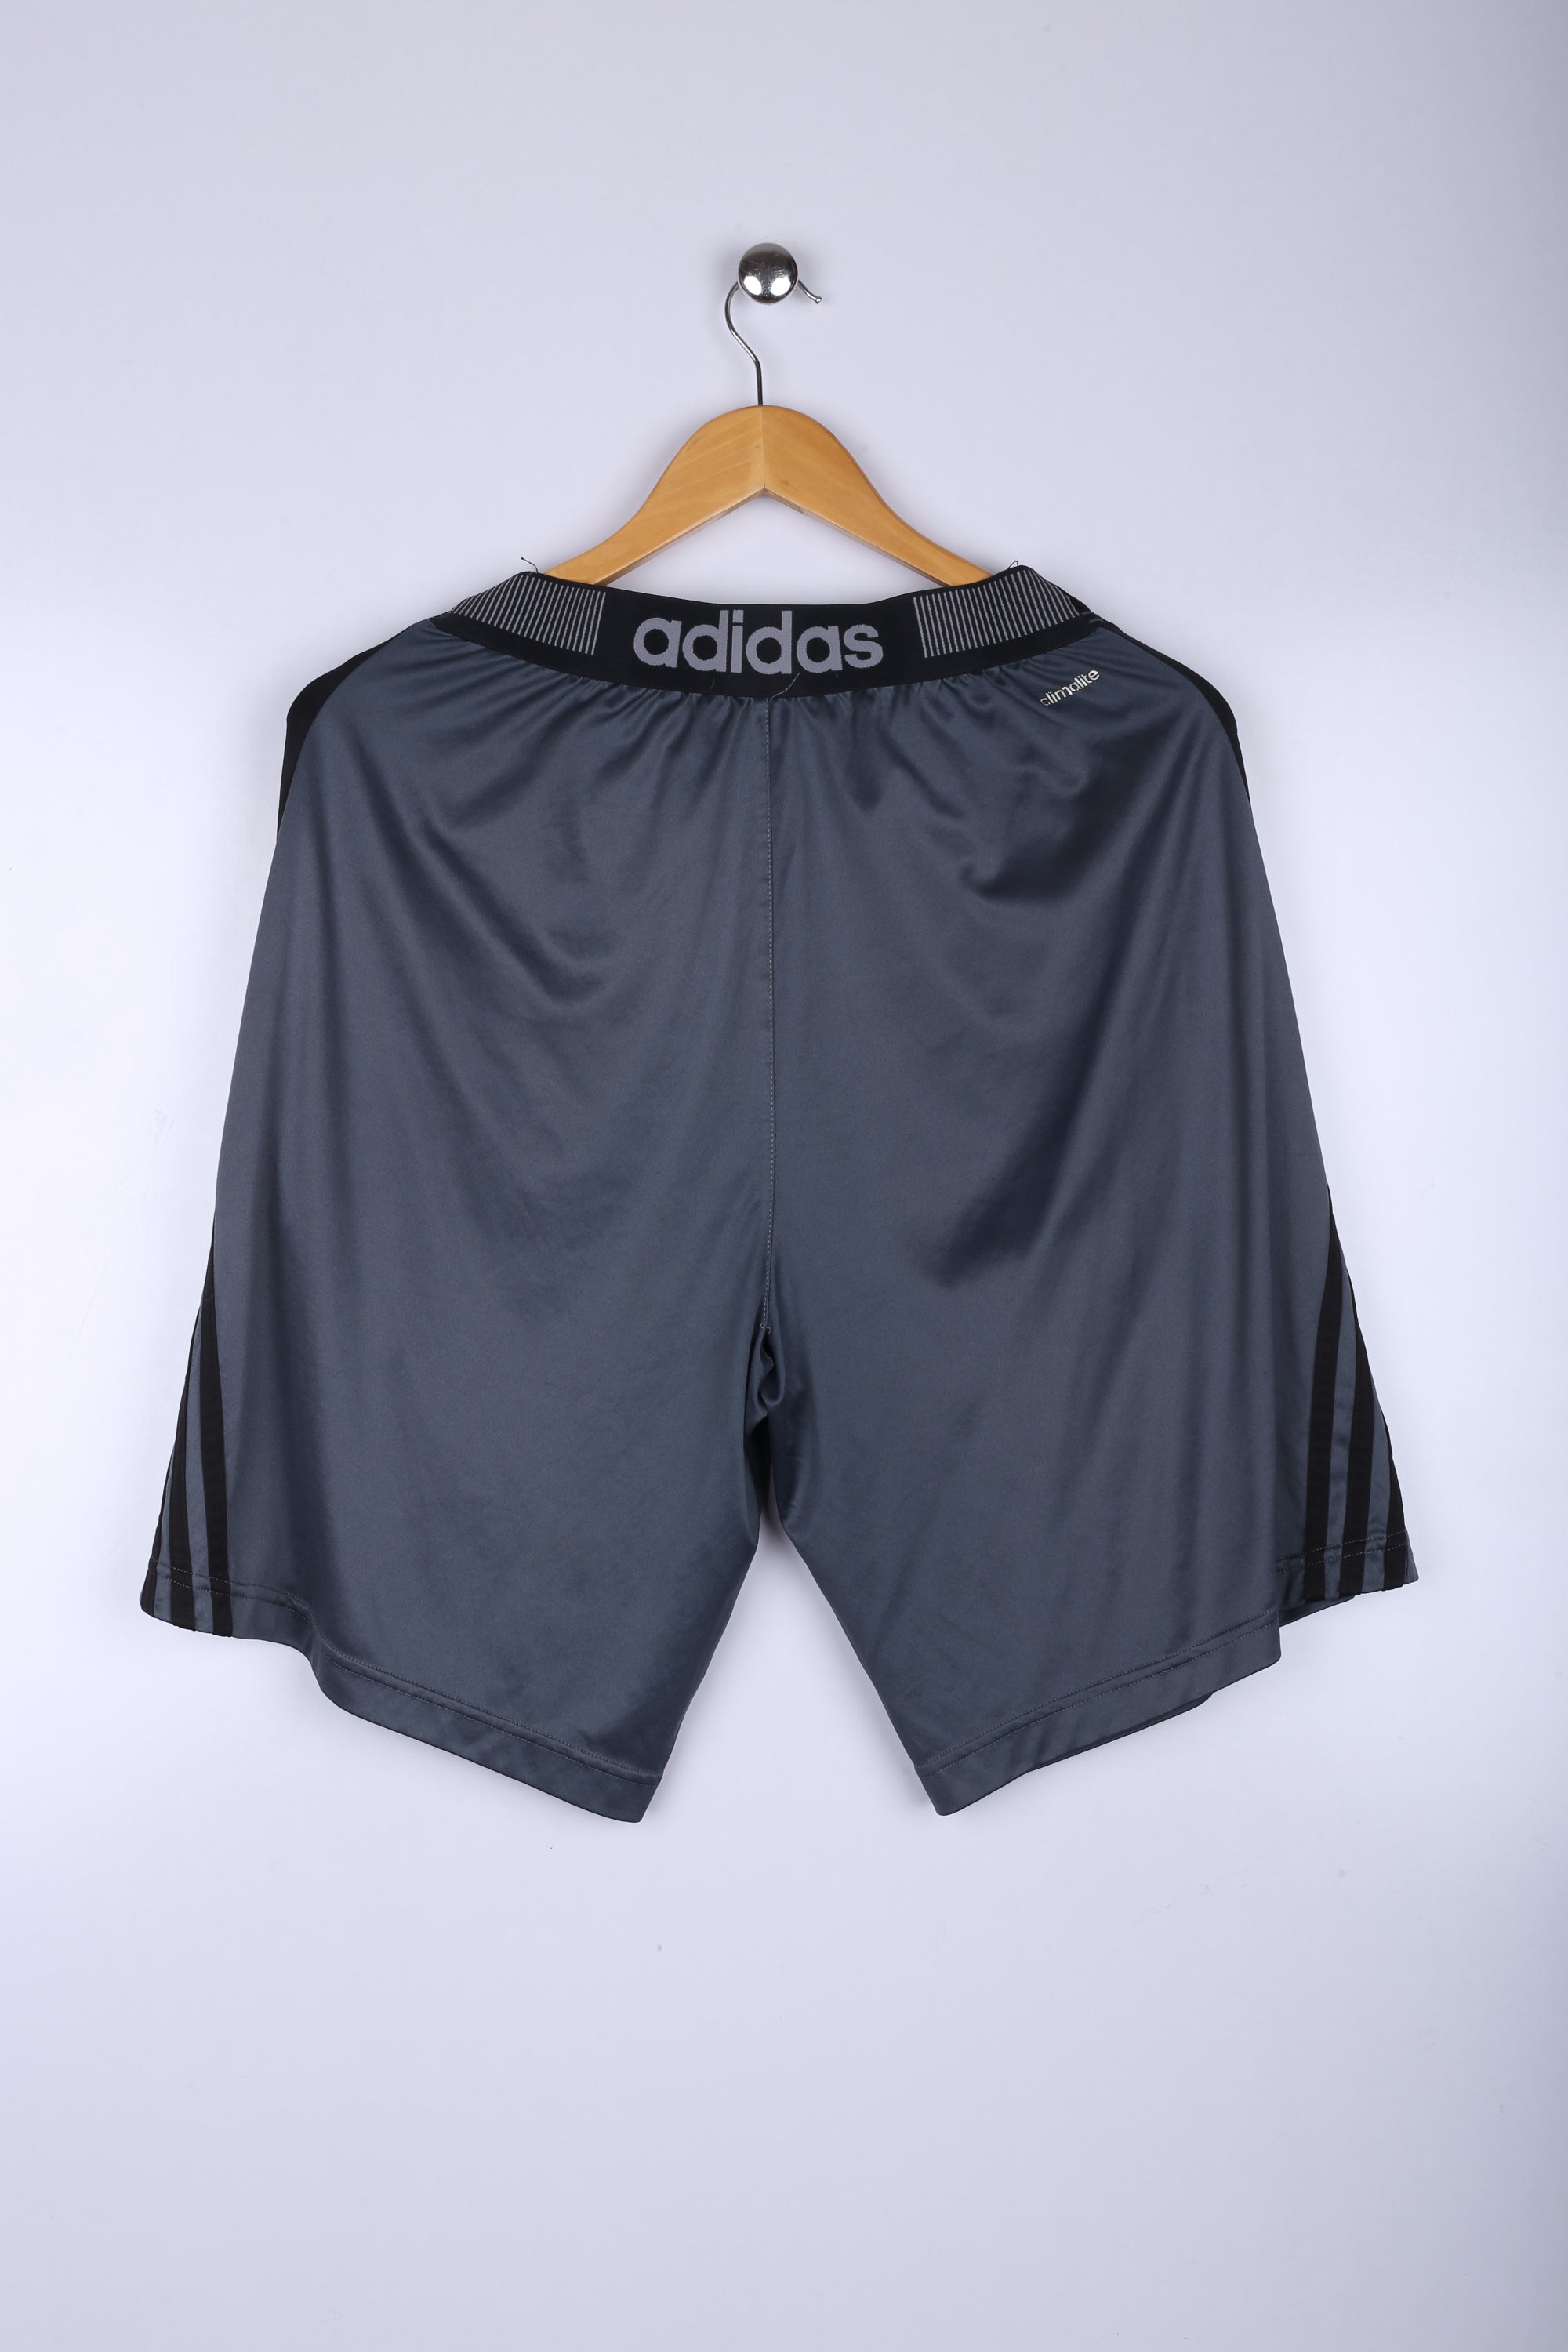 Vintage Adidas Shorts Charcoal Grey